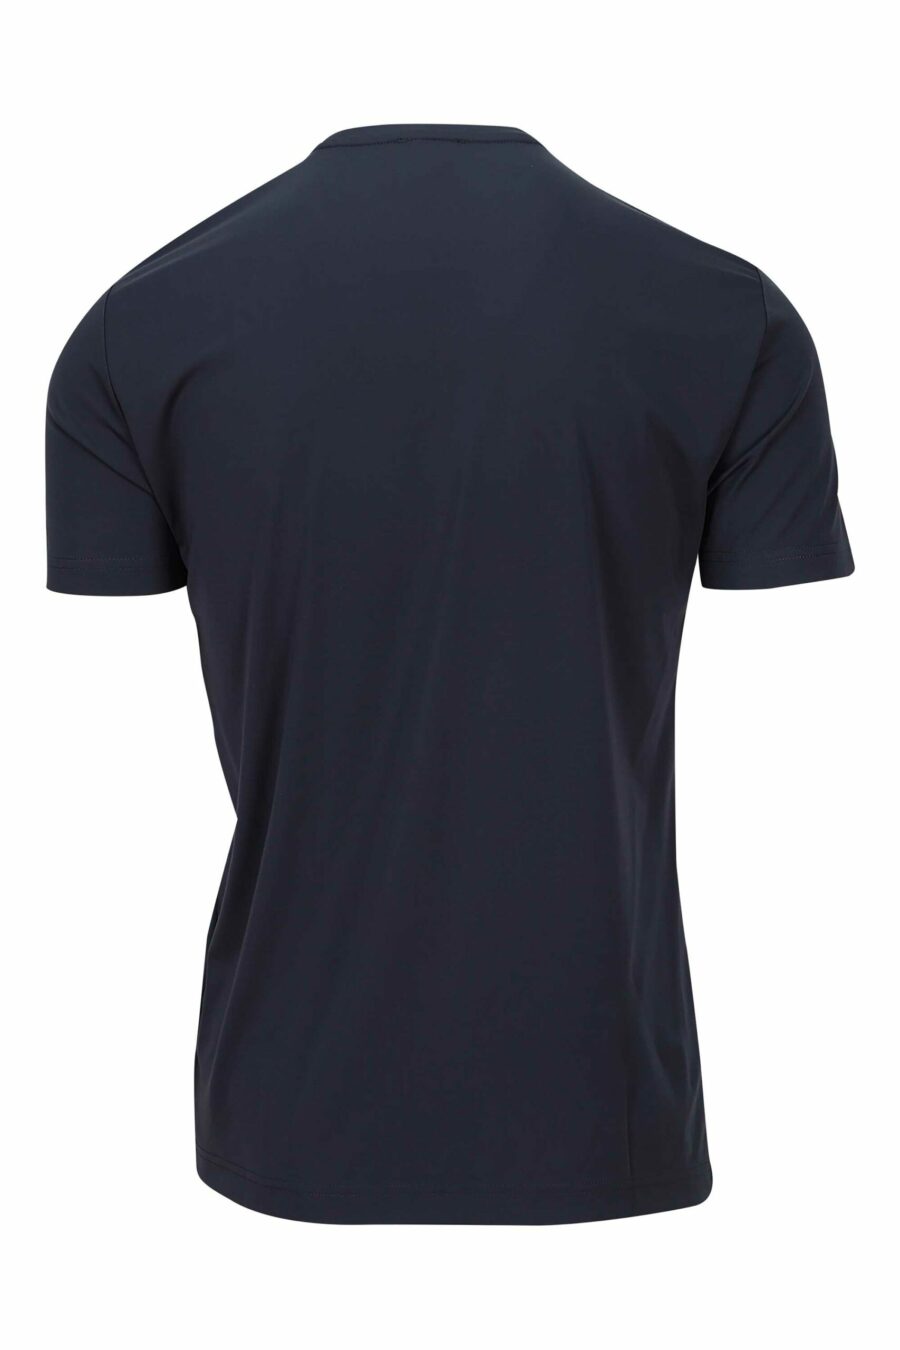 T-shirt bleu marine avec mini-logo "lux identity" - 8057767519964 à l'échelle 1